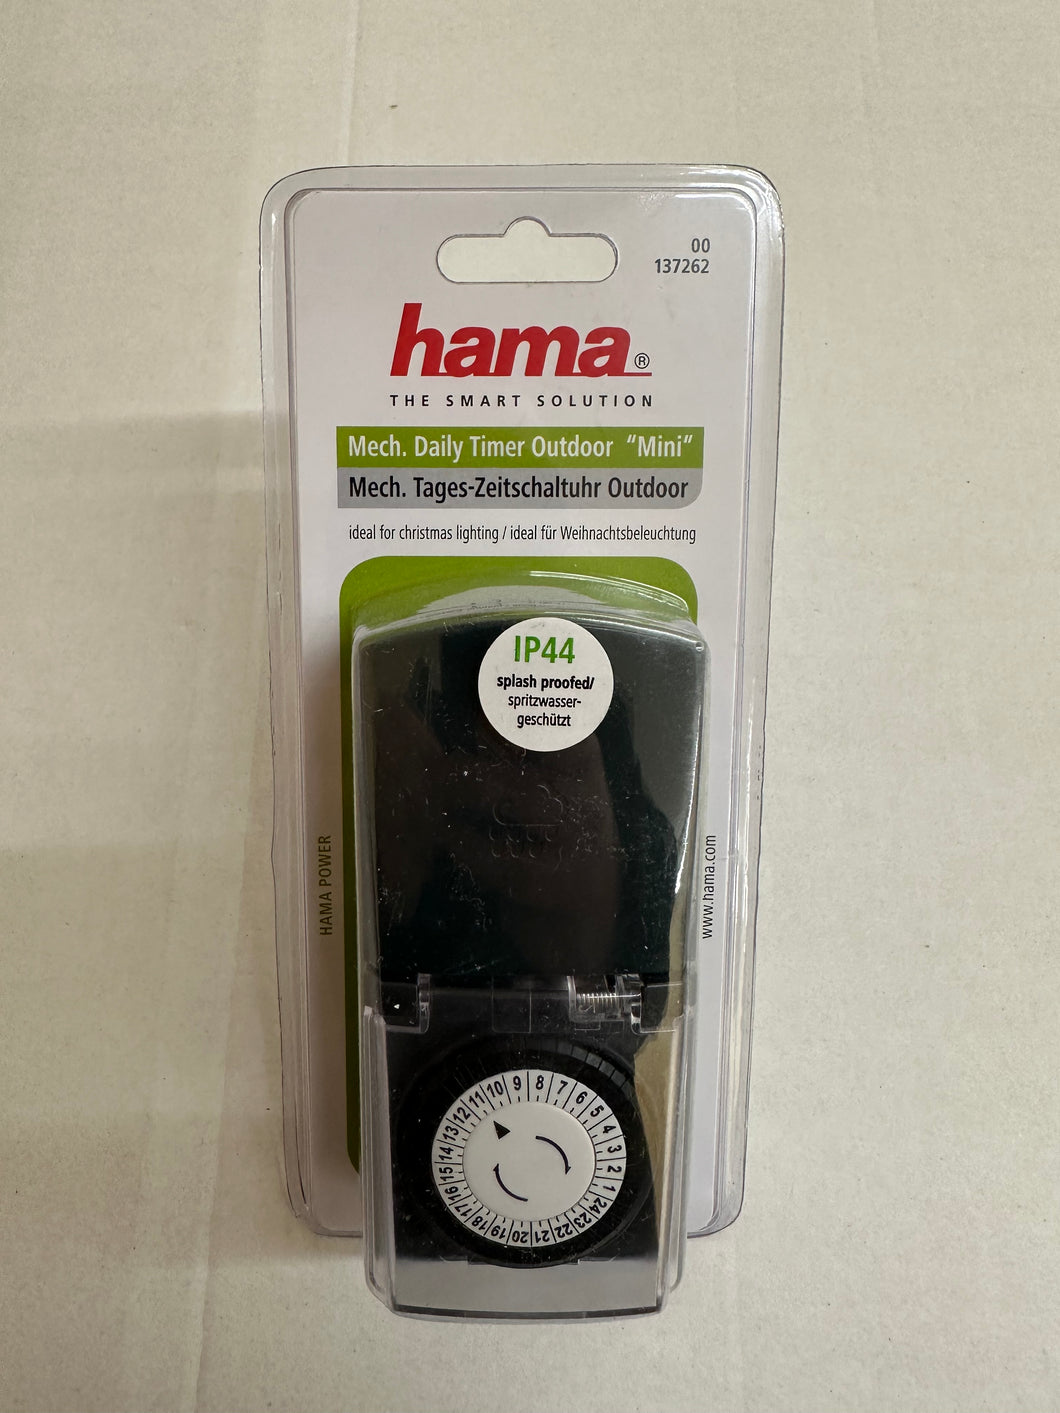 Hama 137262 Mini Tages-Zeitschaltuhr Outdoor (679)